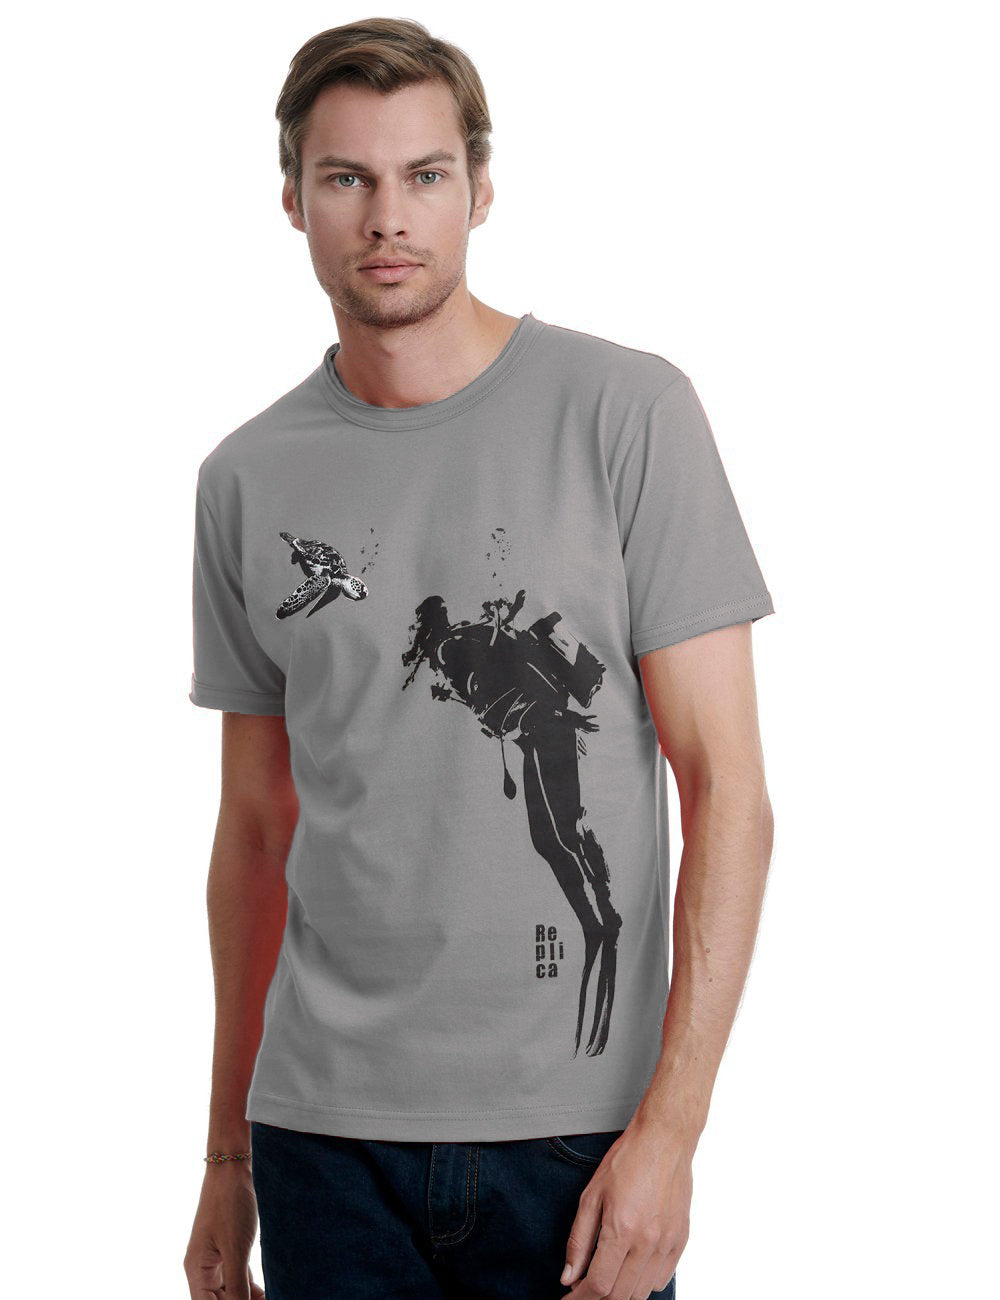 Diver - Replica Mens T-Shirt